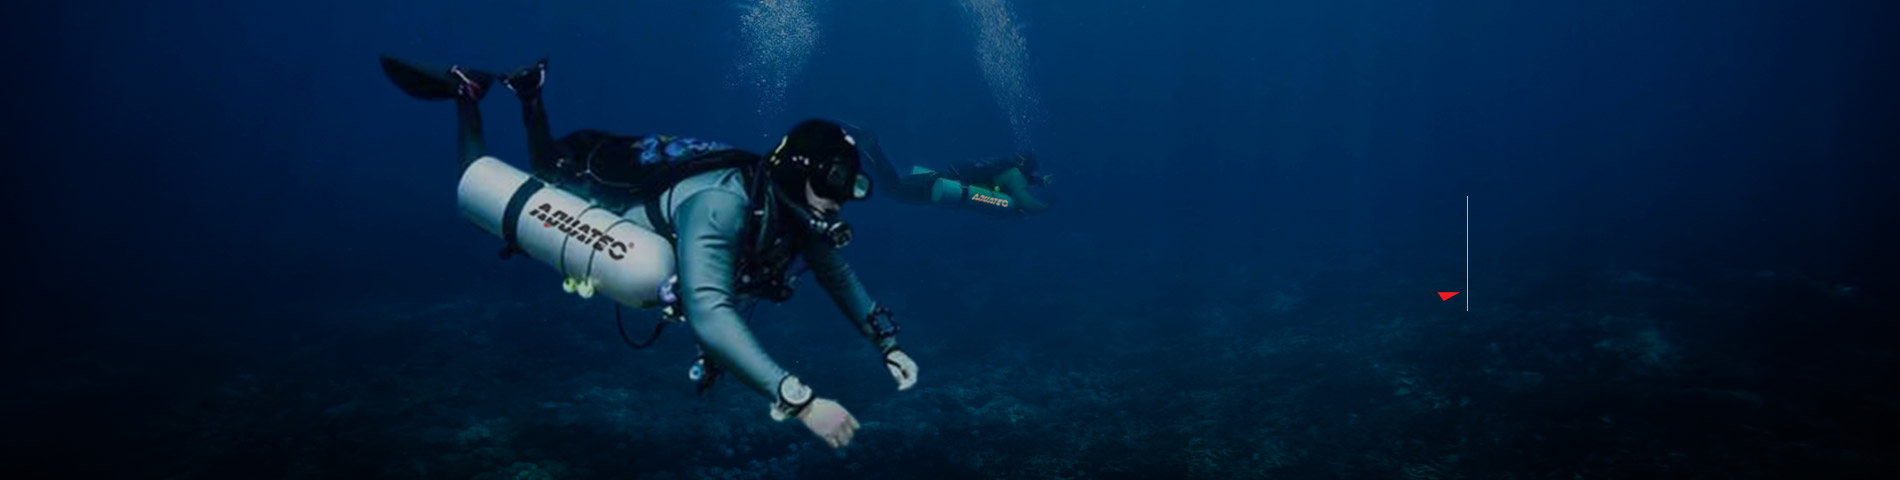 AQUATEC'i keşfedin Profesyonel tüplü dalış ekipmanları